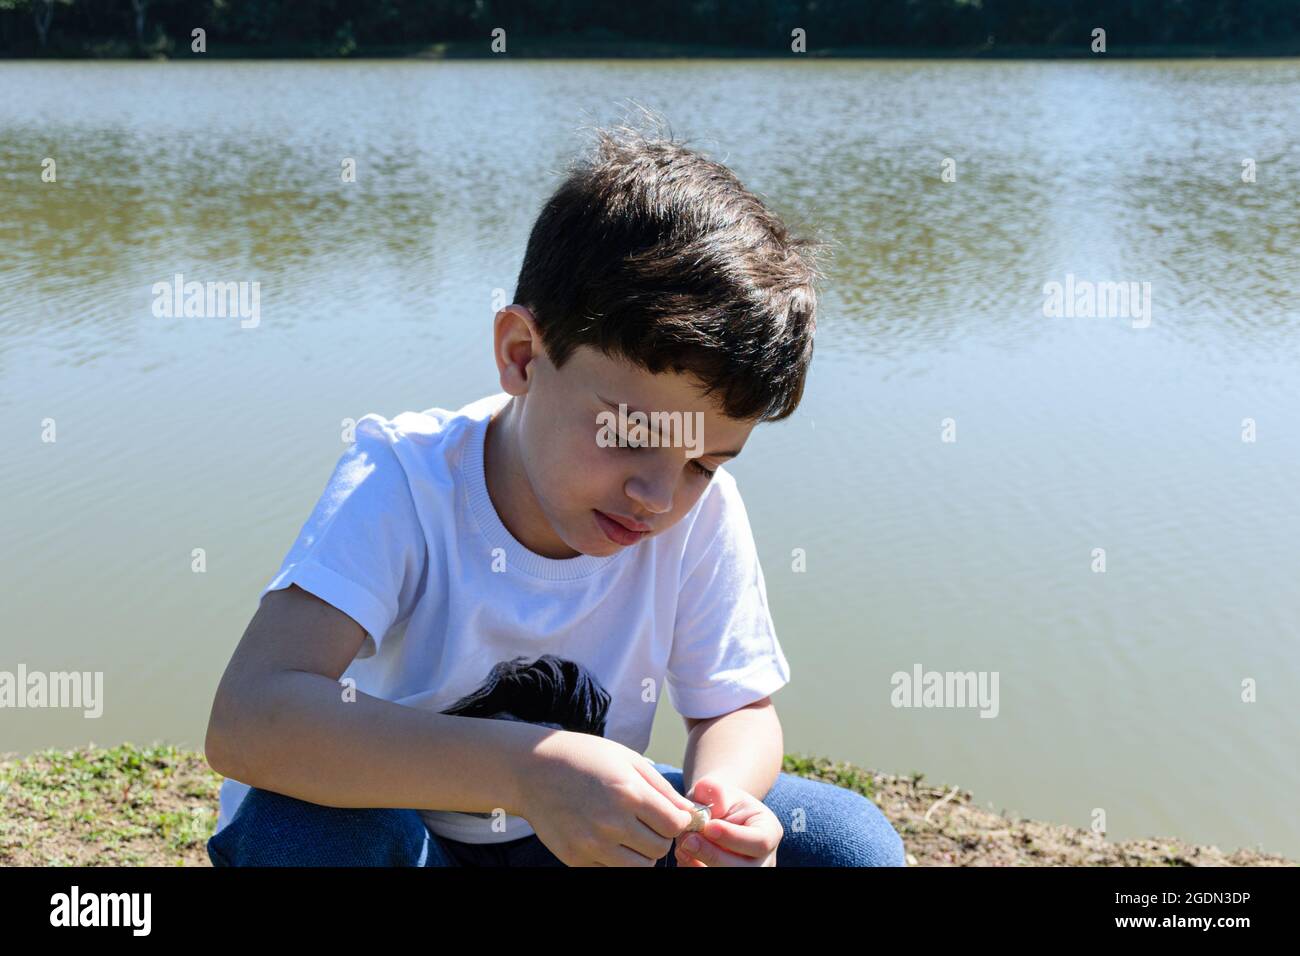 niño de 8 años que pone el cebo en el gancho para pescar en una mañana soleada. Foto de stock